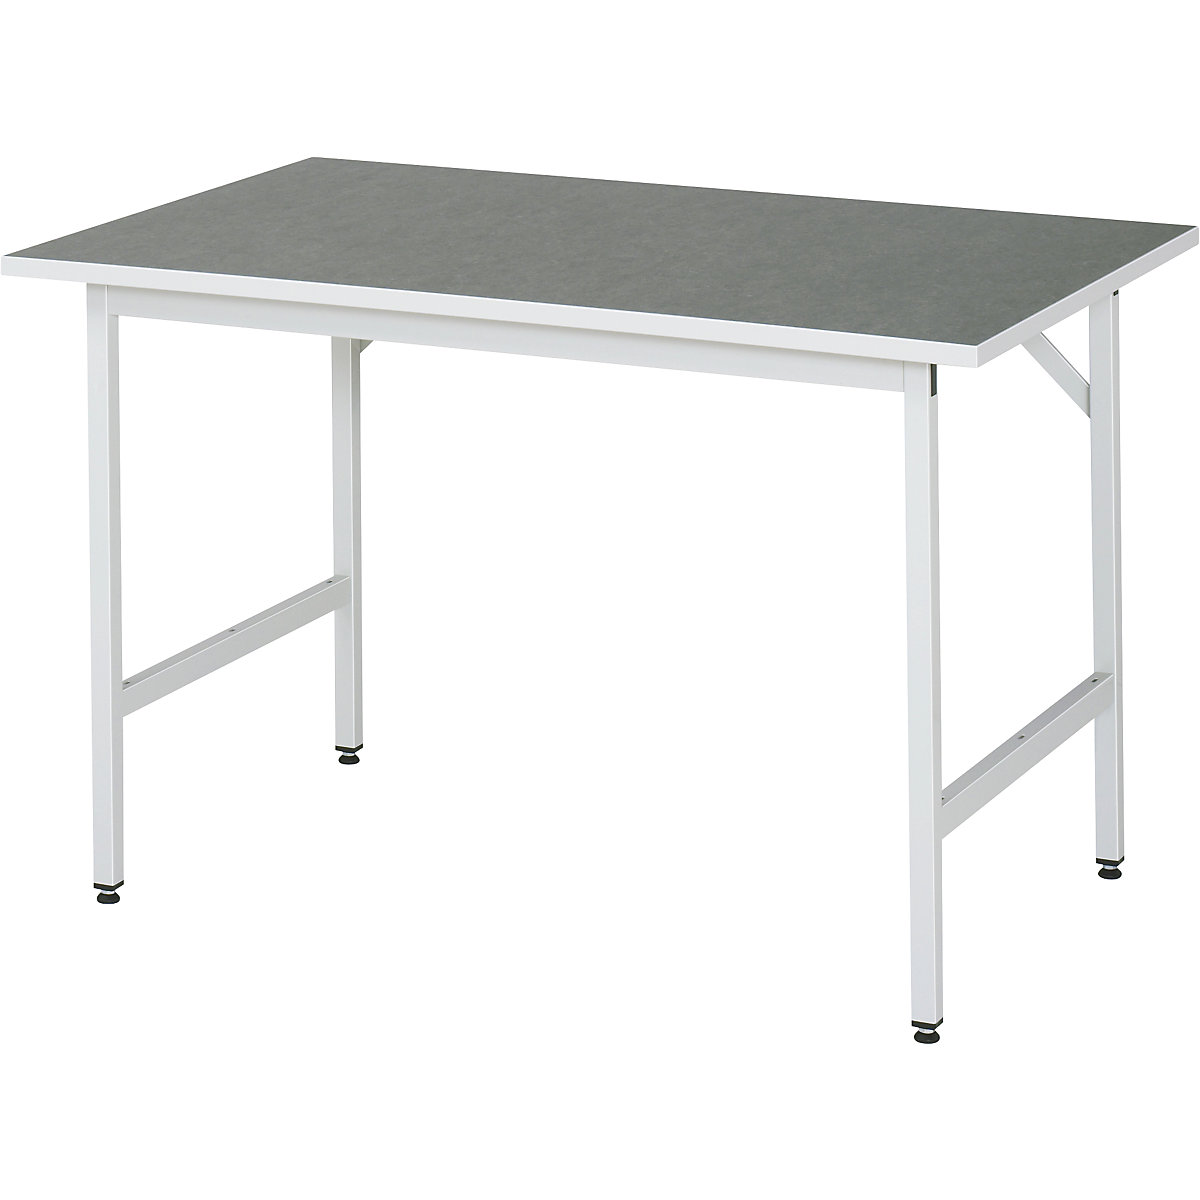 Munkaasztal, állítható magasságú – RAU, 800 – 850 mm, linóleum lap, szé x mé 1250 x 800 mm, világosszürke-9